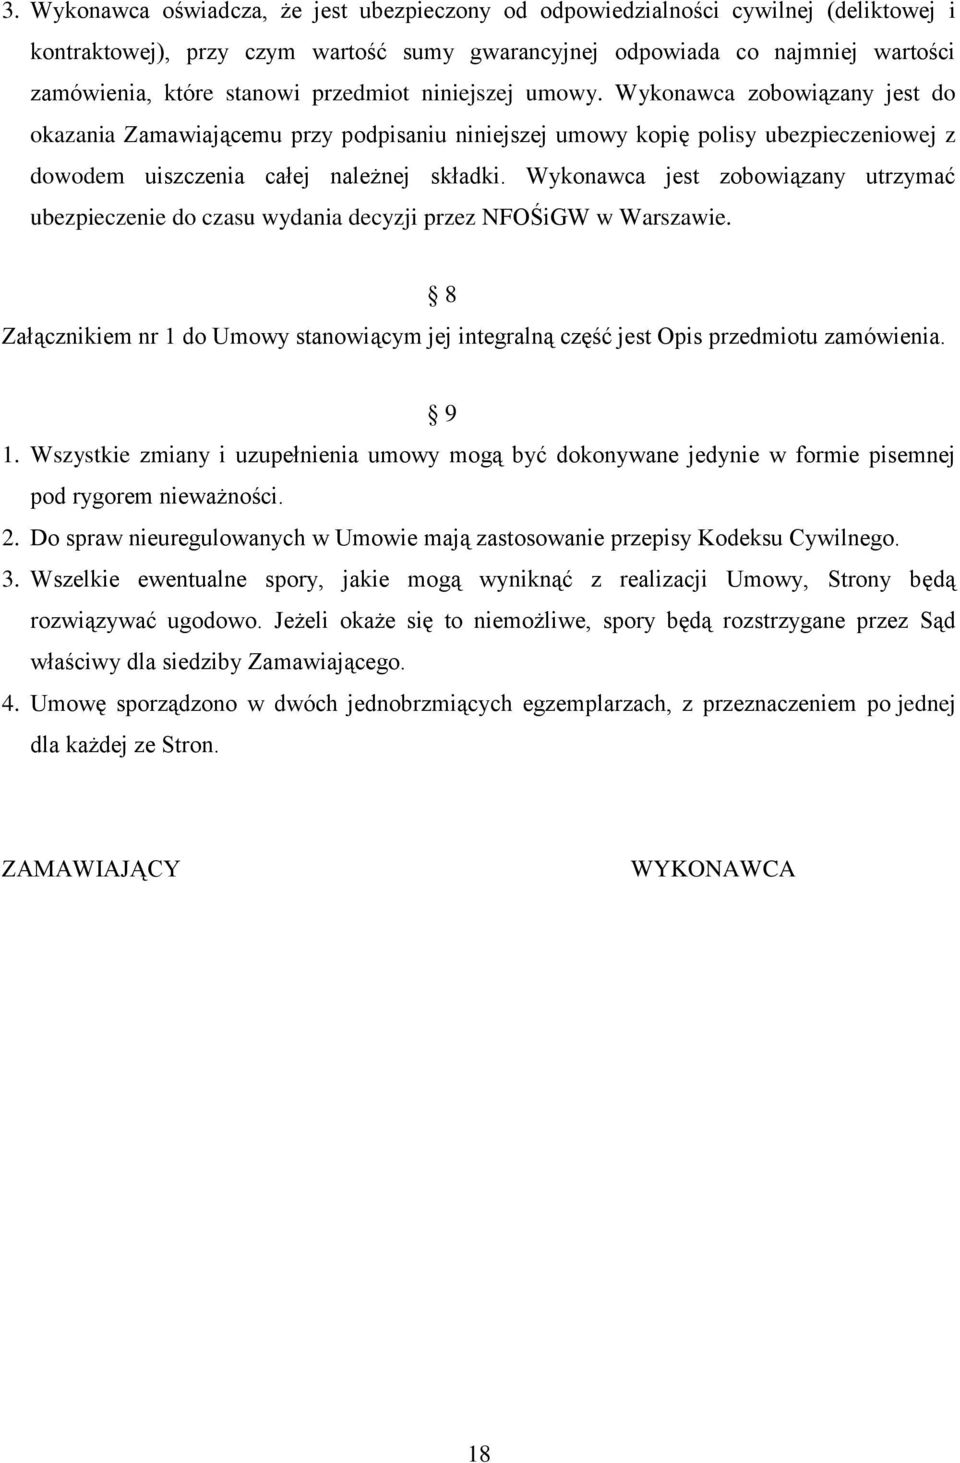 Wykonawca jest zobowiązany utrzymać ubezpieczenie do czasu wydania decyzji przez NFOŚiGW w Warszawie. 8 Załącznikiem nr 1 do Umowy stanowiącym jej integralną część jest Opis przedmiotu zamówienia.